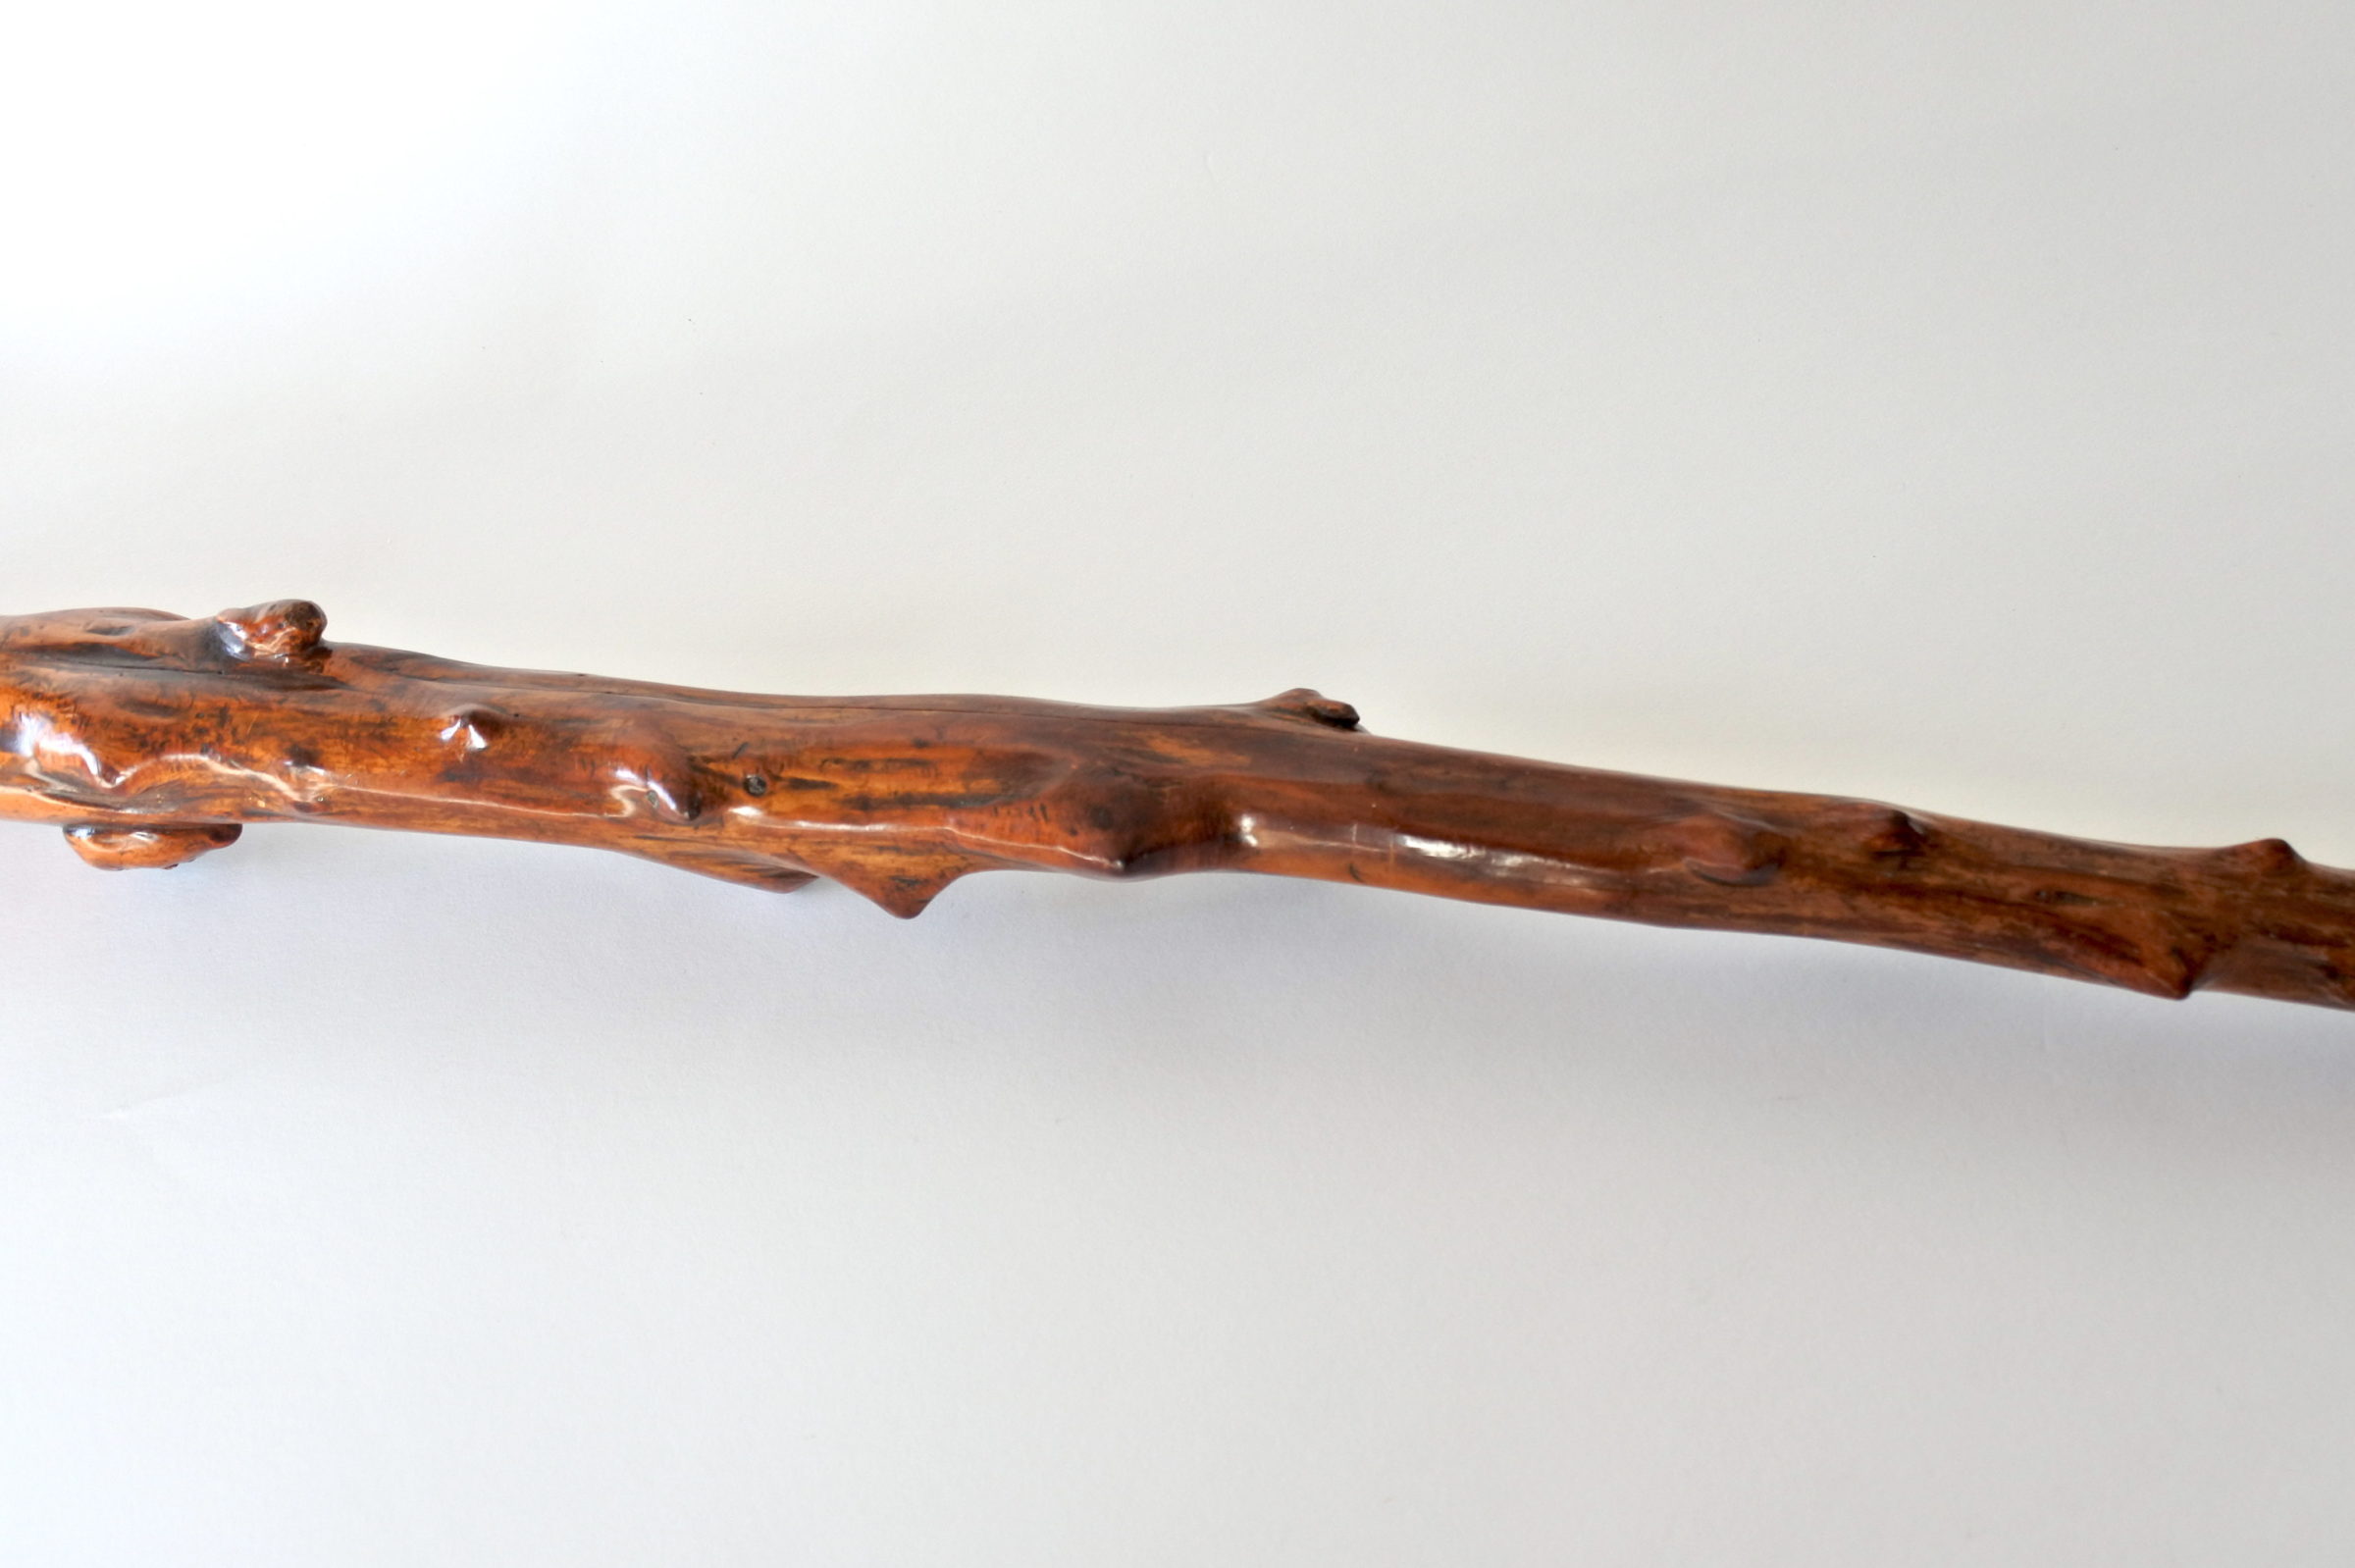 Bastone monossilo in legno scolpito con impugnatura a forma di testa di cane - 9